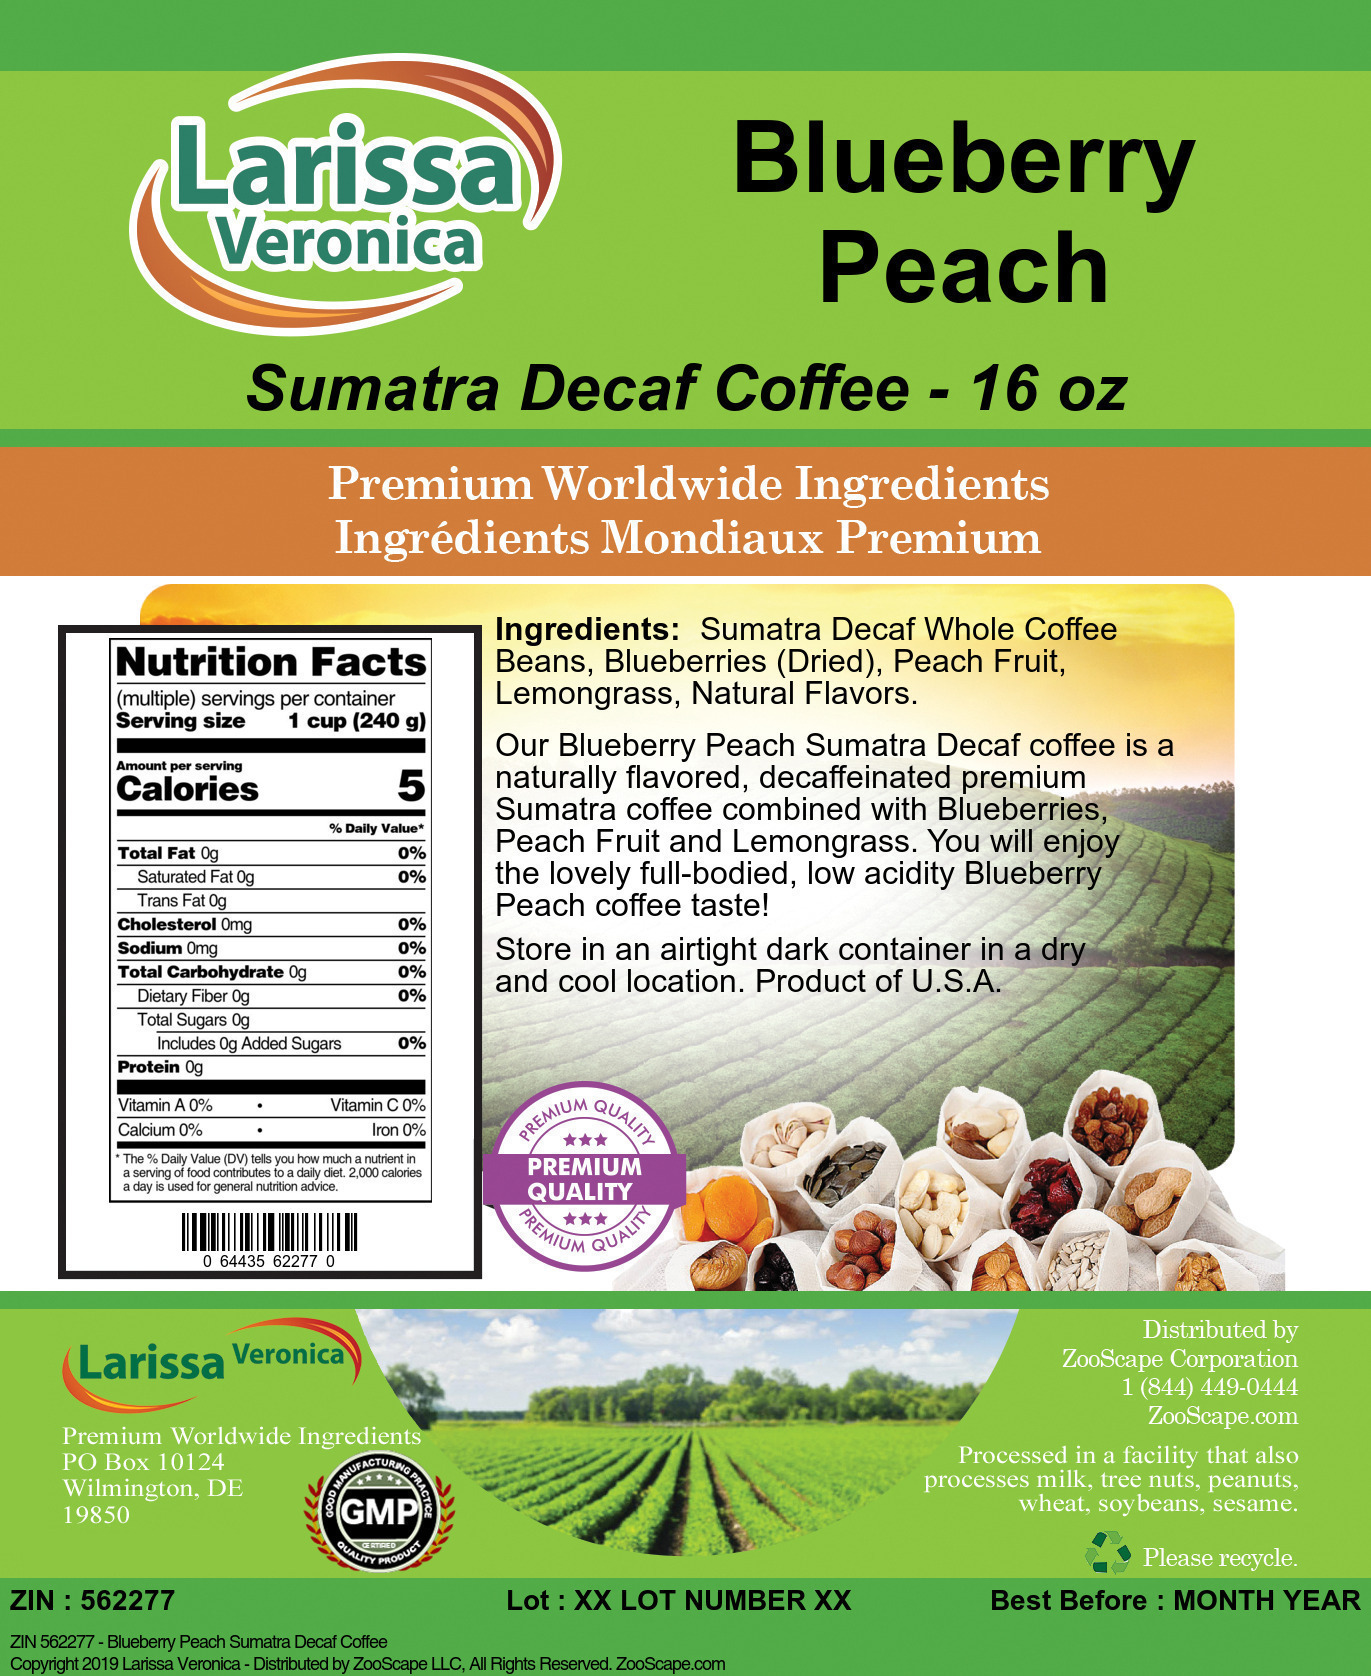 Blueberry Peach Sumatra Decaf Coffee - Label